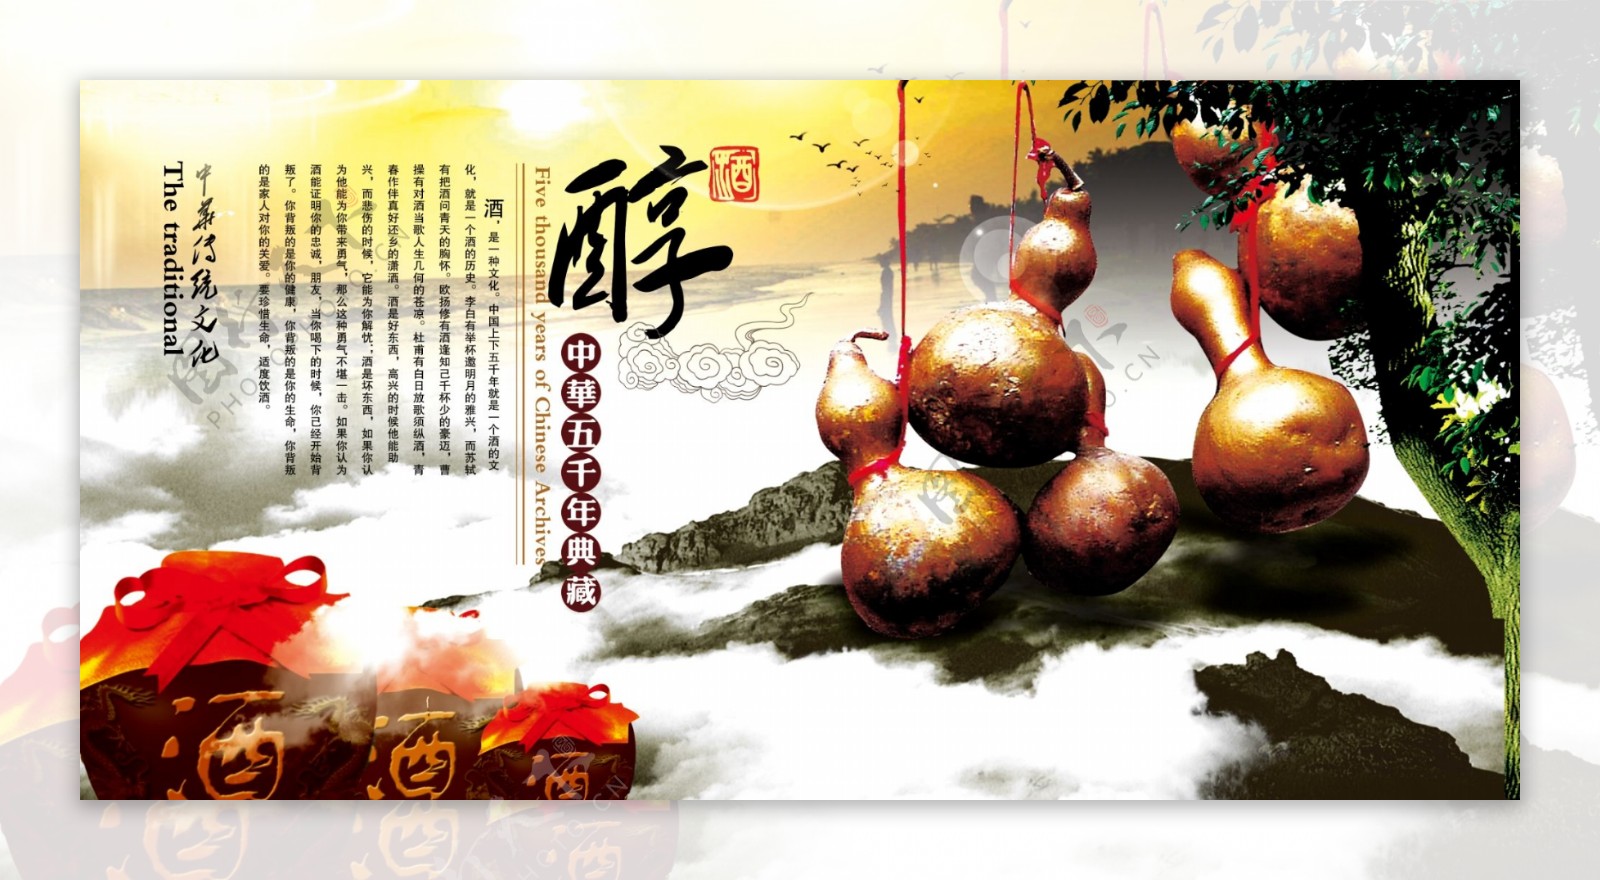 中华传统文化醇中崋五千年典藏